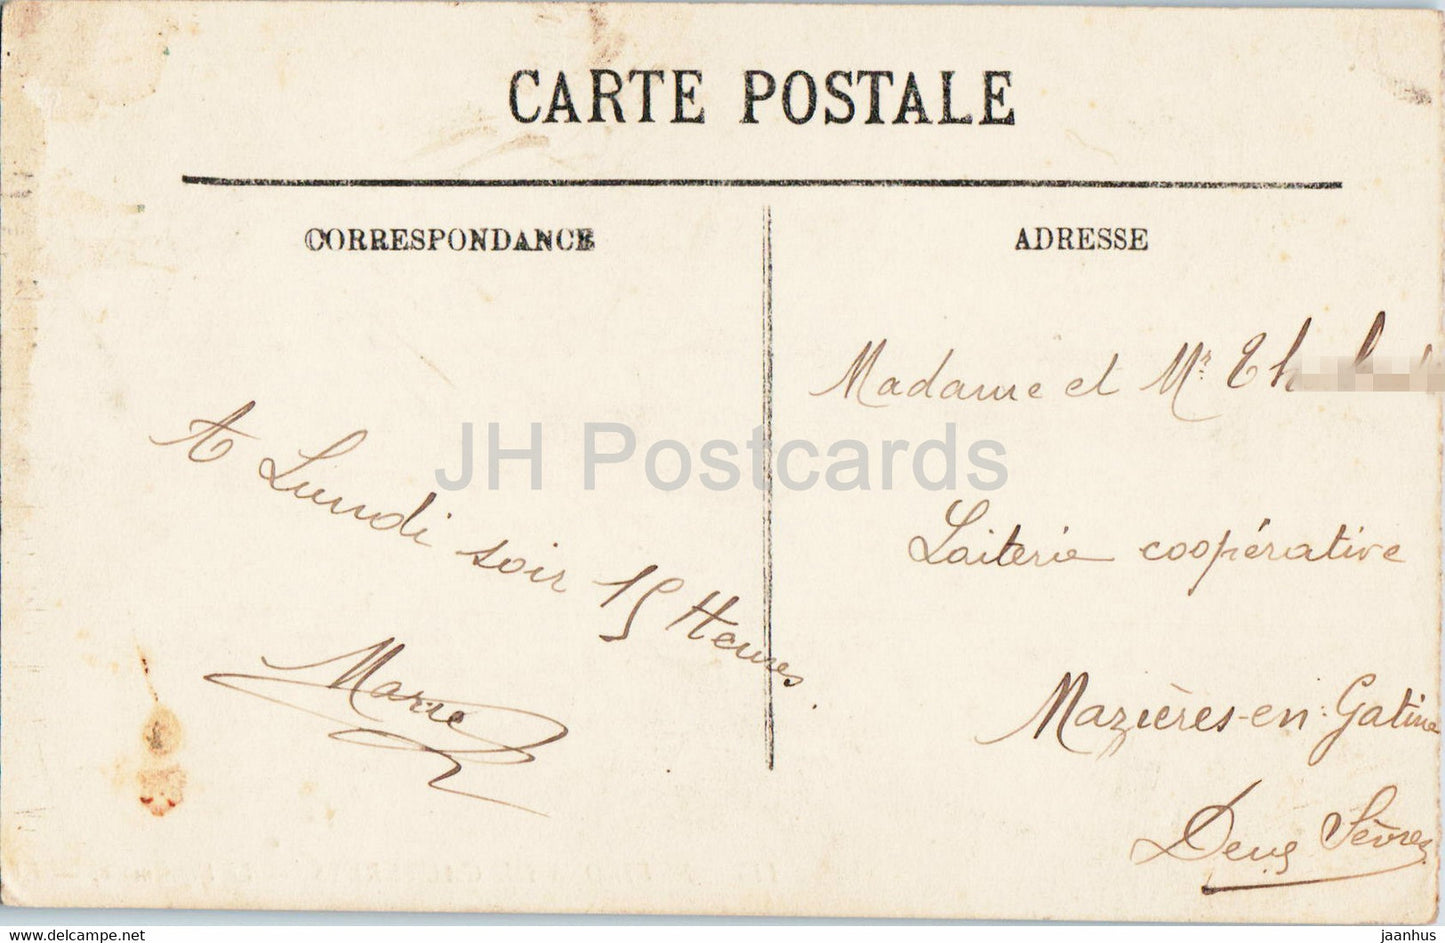 Environs de Cauterets - Le Vignemale - 115 - carte postale ancienne - 1912 - France - oblitéré